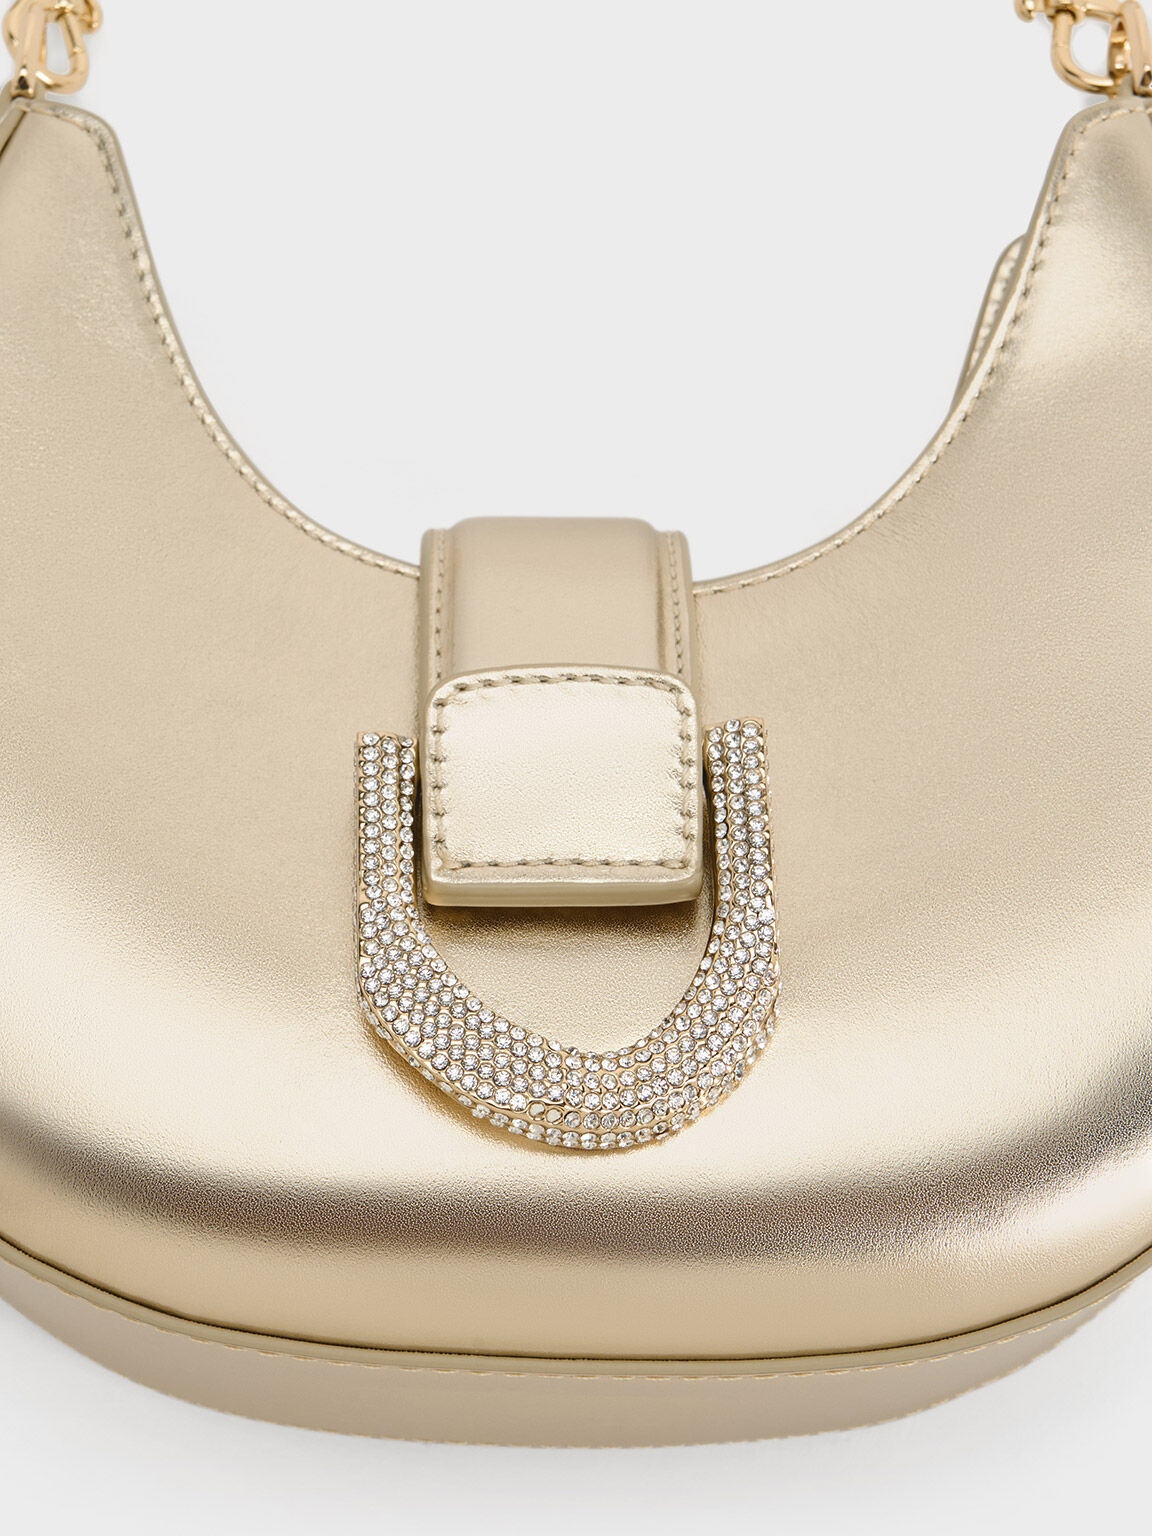 Gabine Metallic Leather Crystal-Embellished Hobo Bag, Gold, hi-res